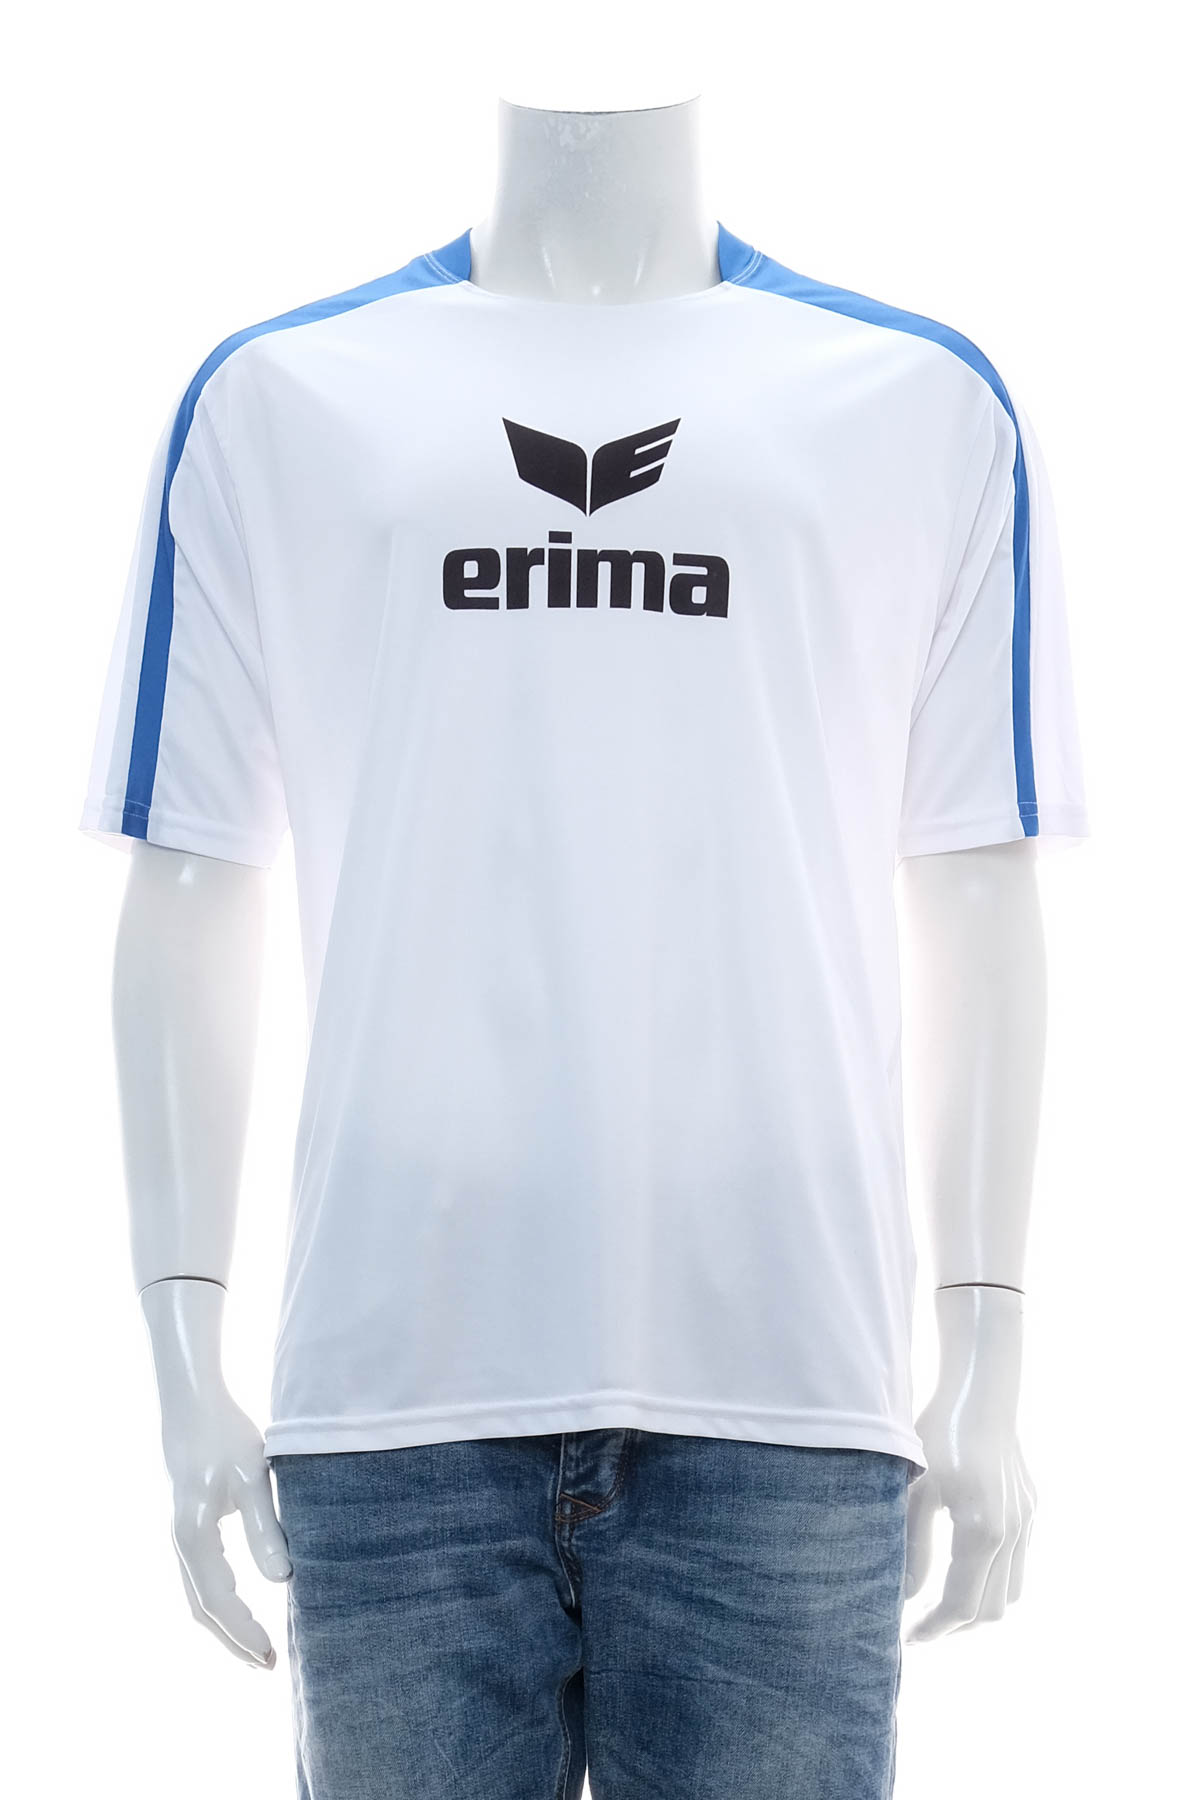 Męska koszulka - Erima - 0